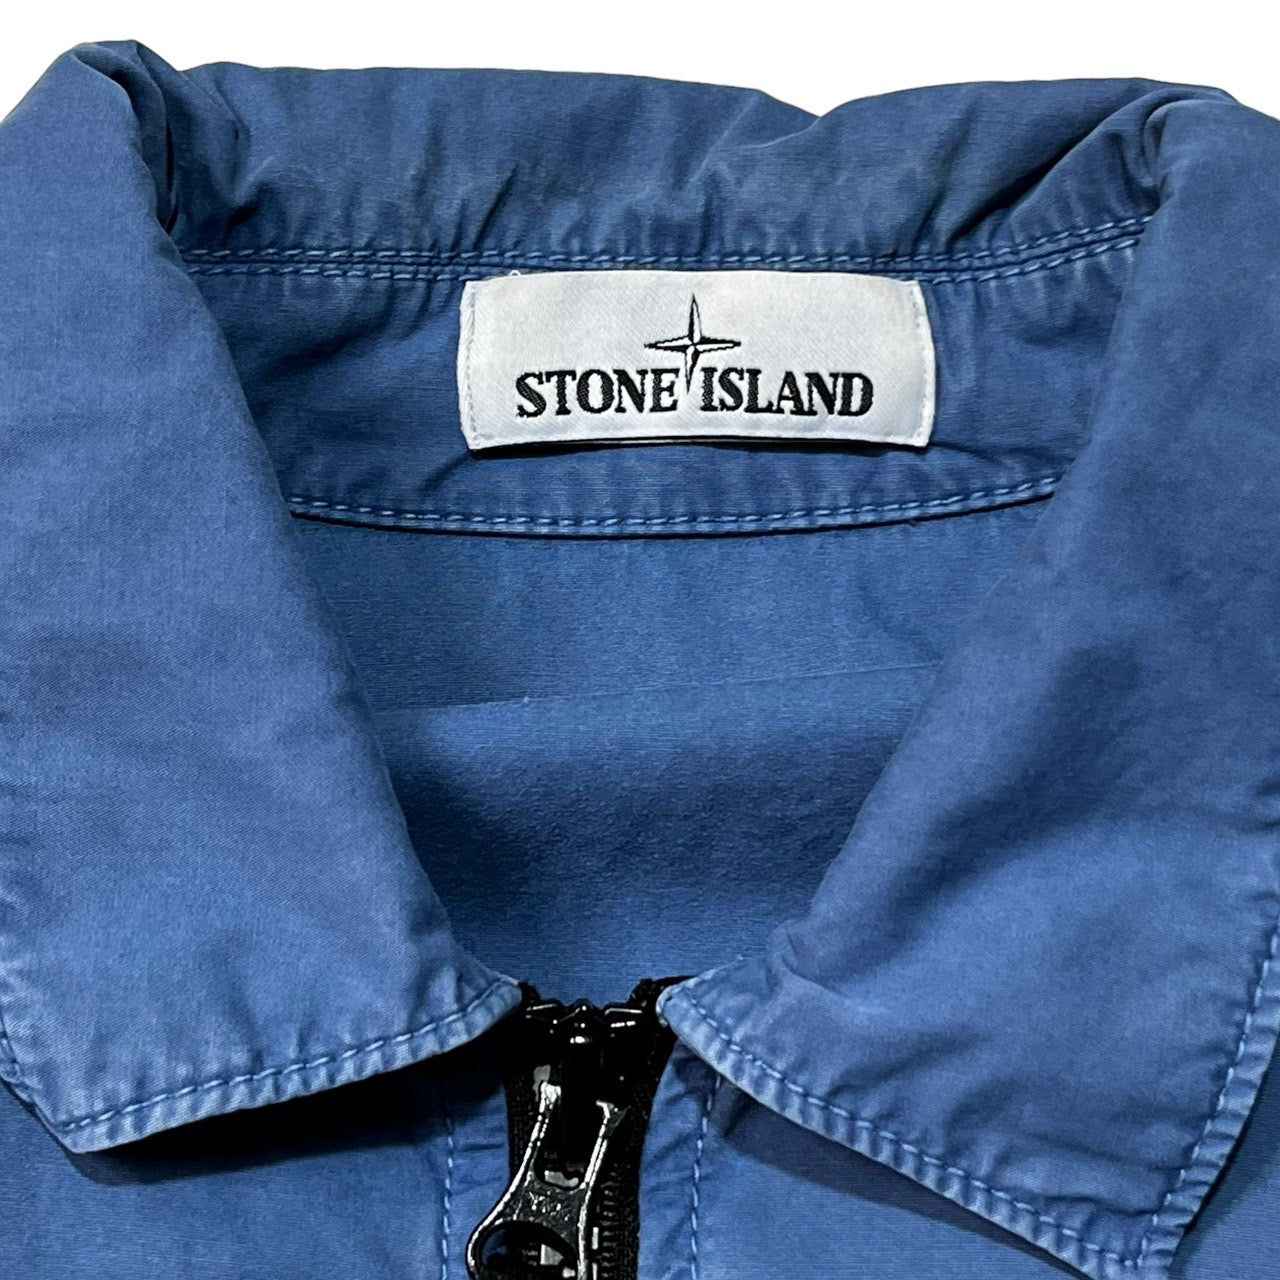 STONE ISLAND(ストーンアイランド) 20AW garment-dyed zip-up jacket ガーメントダイ ジップアップ  ジャケット 7315107WN SIZE L ブルー